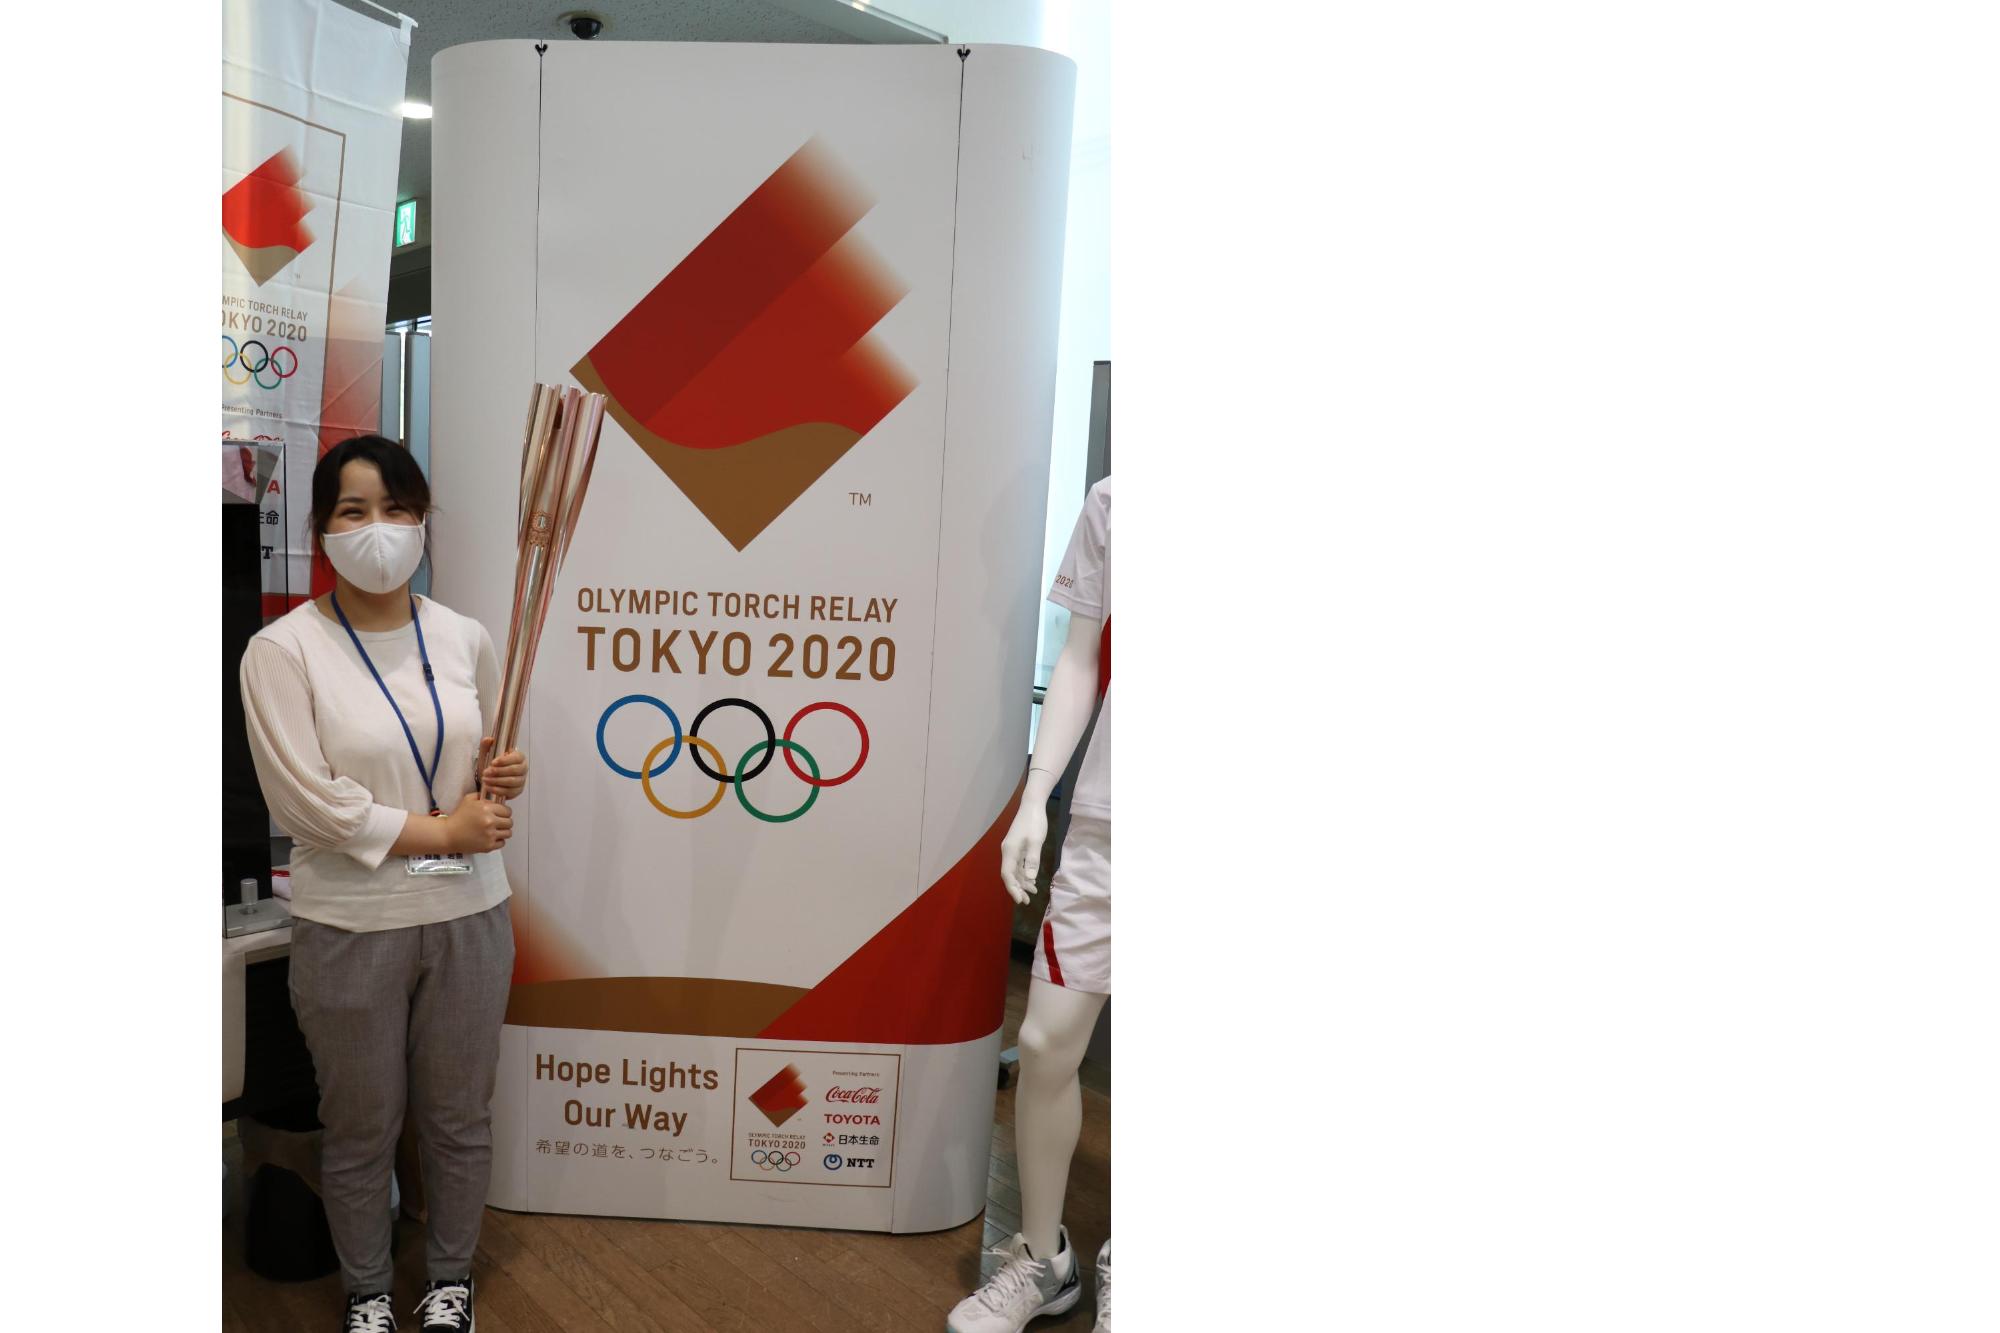 東京2020オリンピックトーチを持って記念撮影